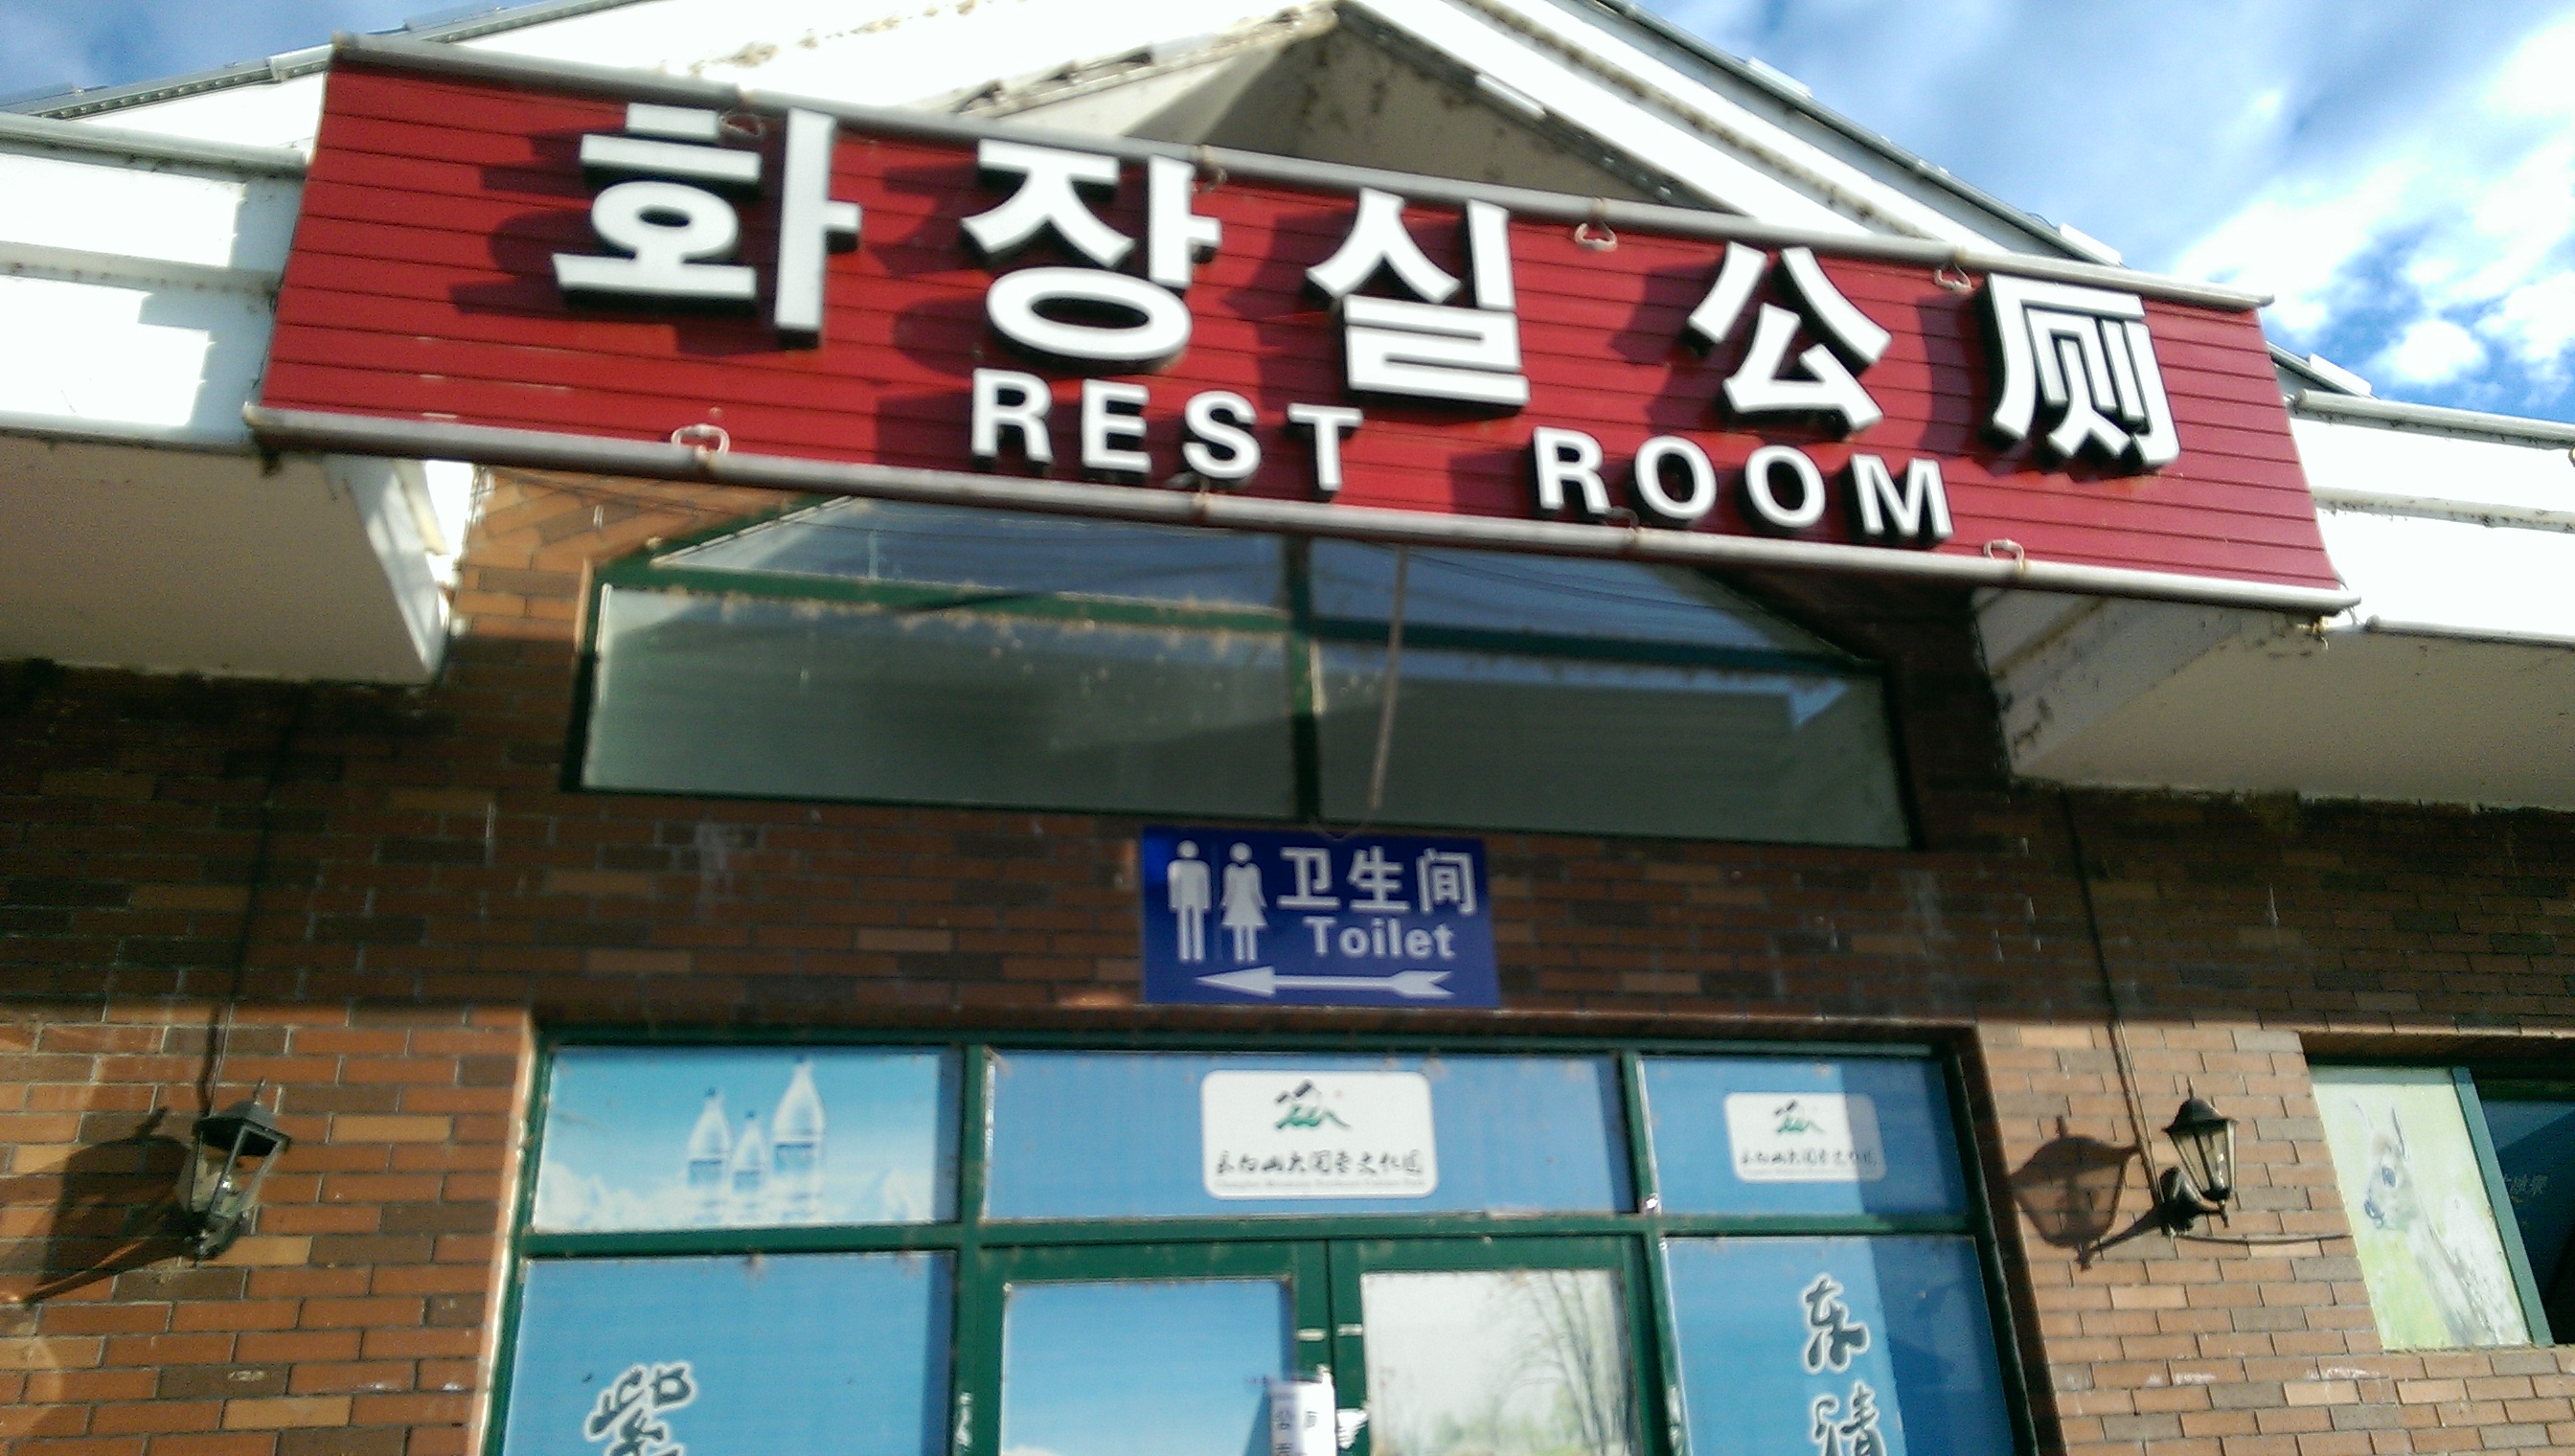 [Rest room, in three languages]